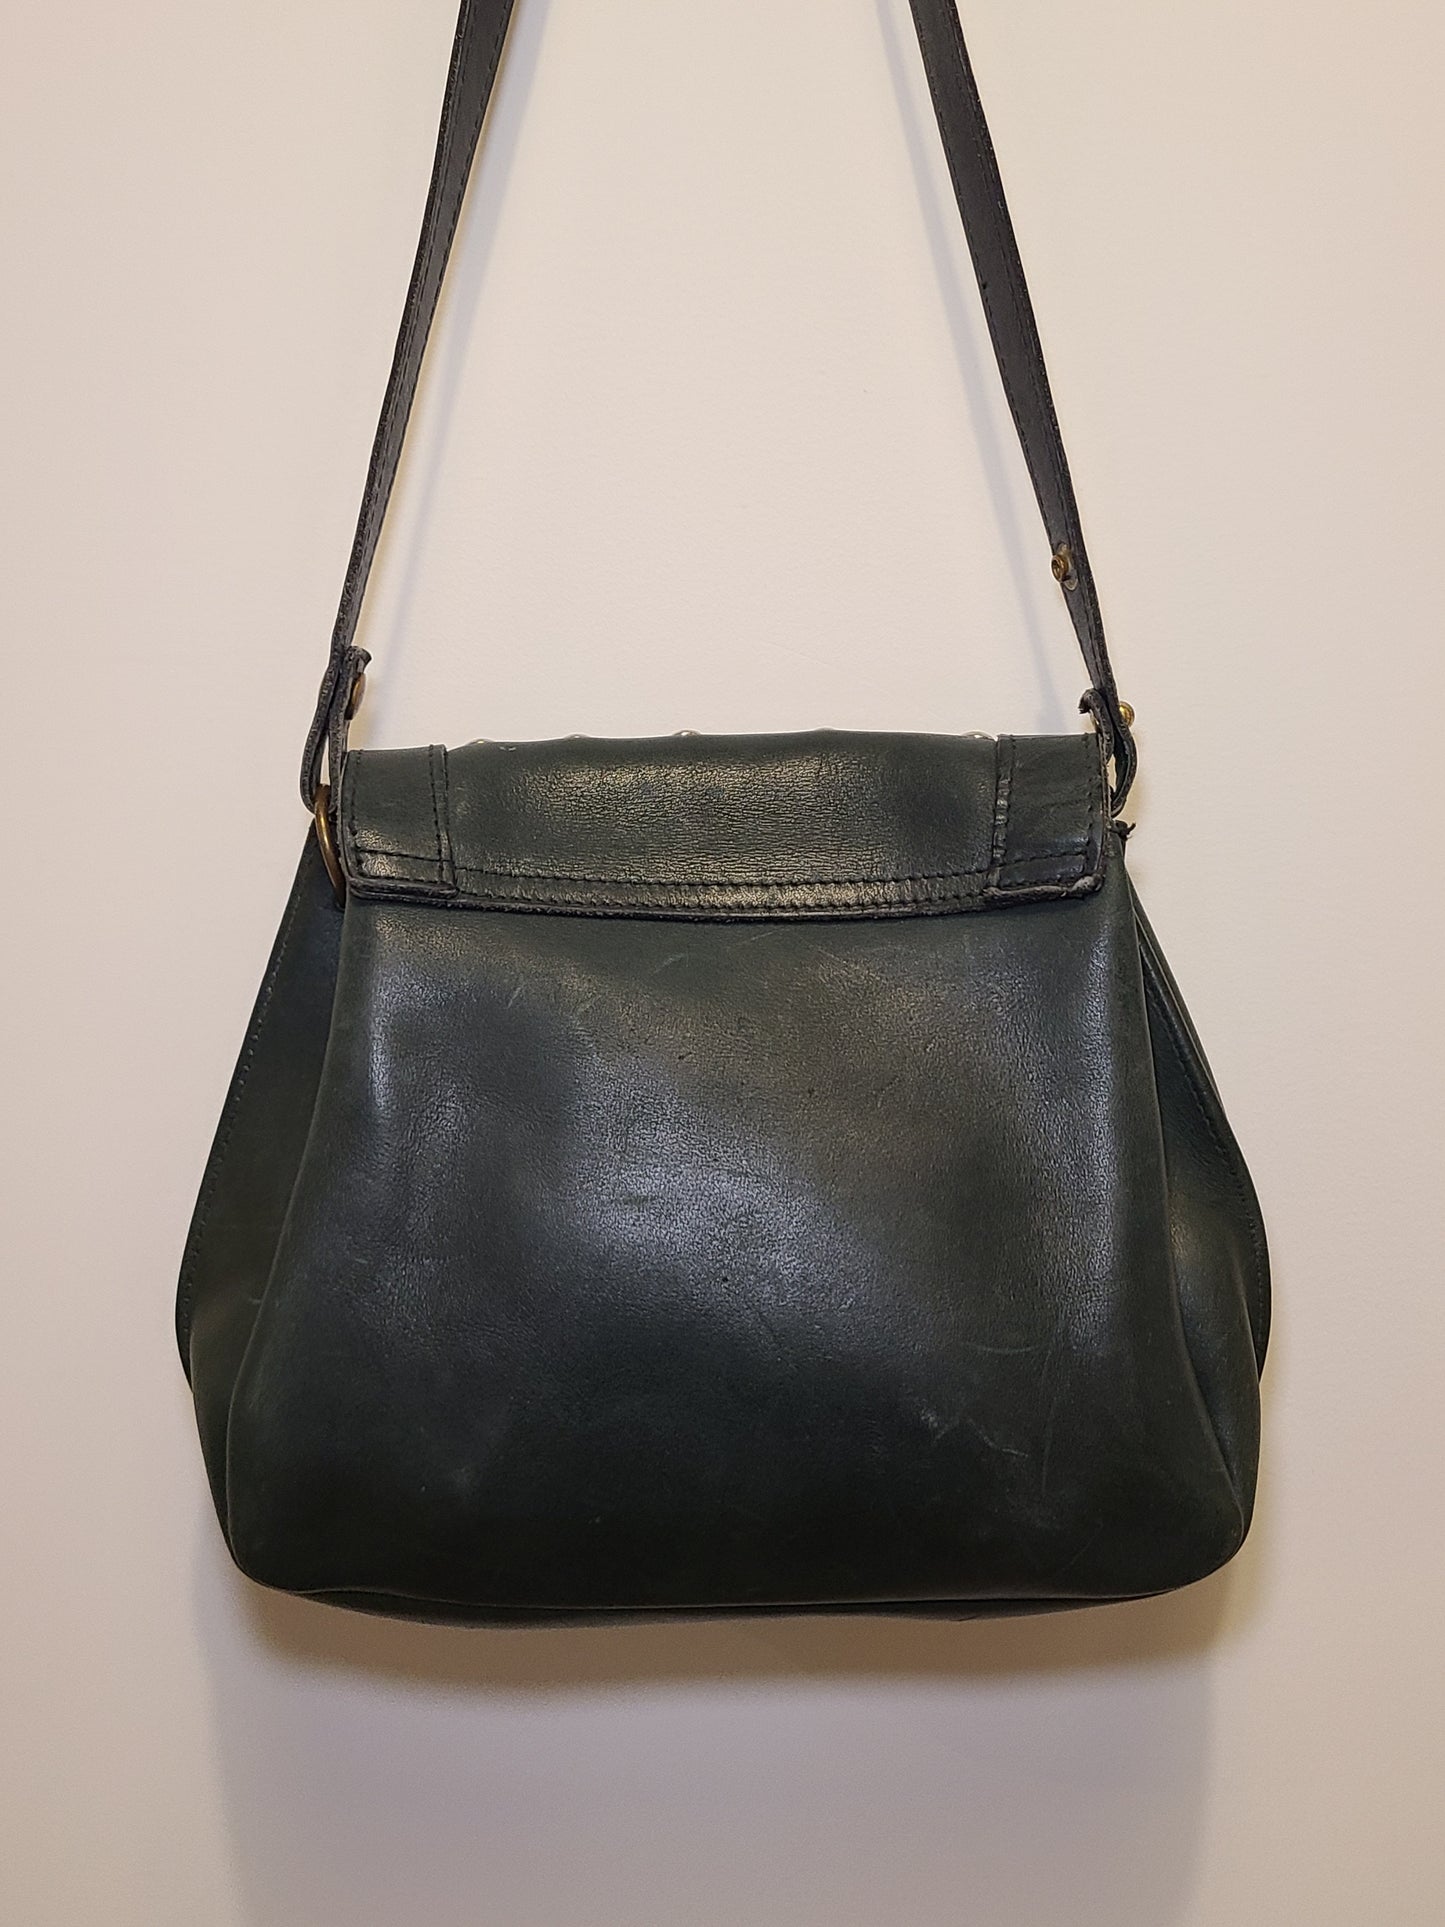 Vintage 1980s Midnight Green Leather Shoulder Bag Re-Imagined